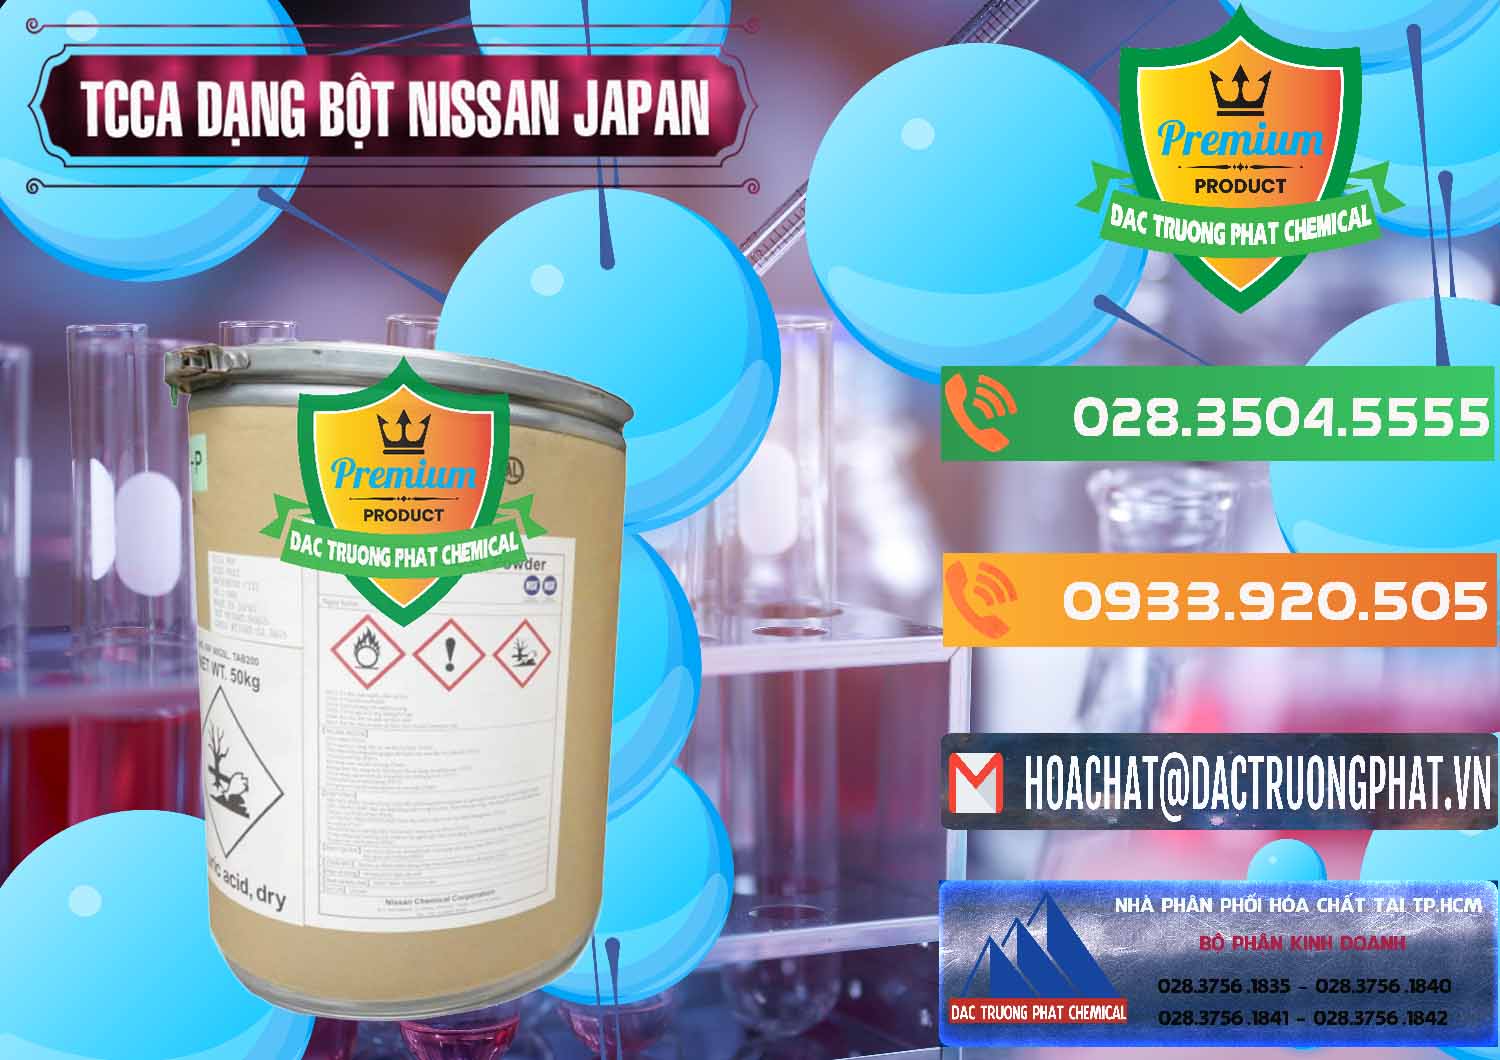 Cty chuyên cung ứng - bán TCCA - Acid Trichloroisocyanuric 90% Dạng Bột Nissan Nhật Bản Japan - 0375 - Nơi chuyên phân phối & bán hóa chất tại TP.HCM - hoachatxulynuoc.com.vn